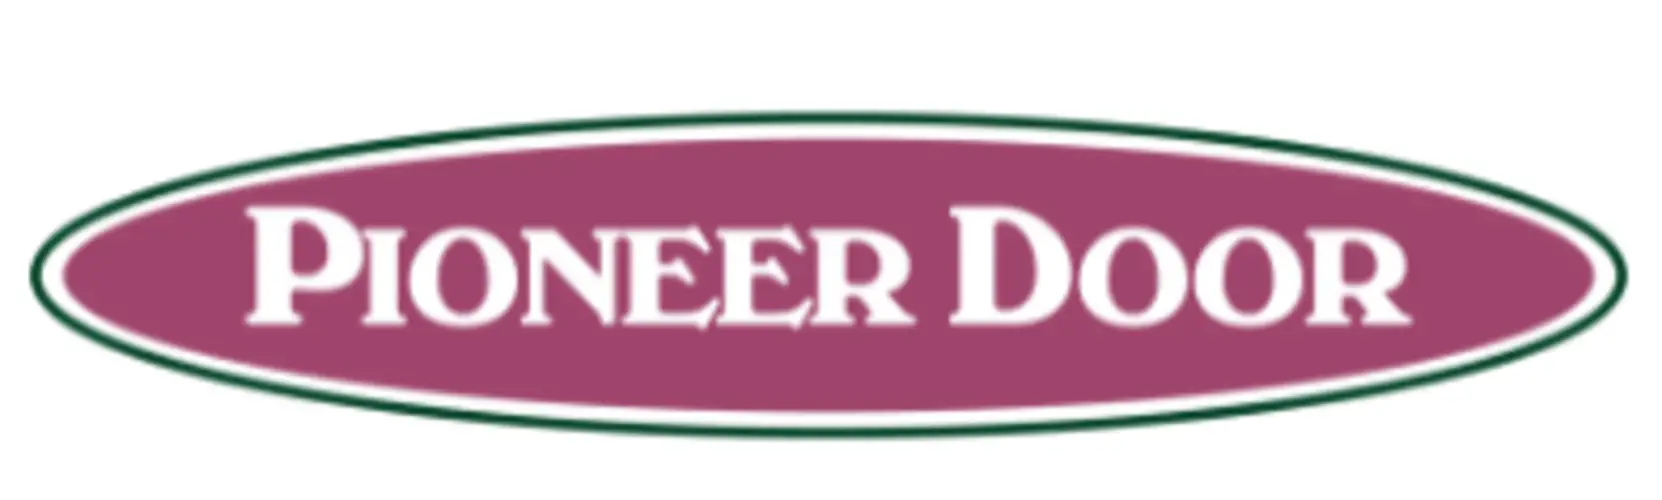 Business logo of Pioneer Door Co